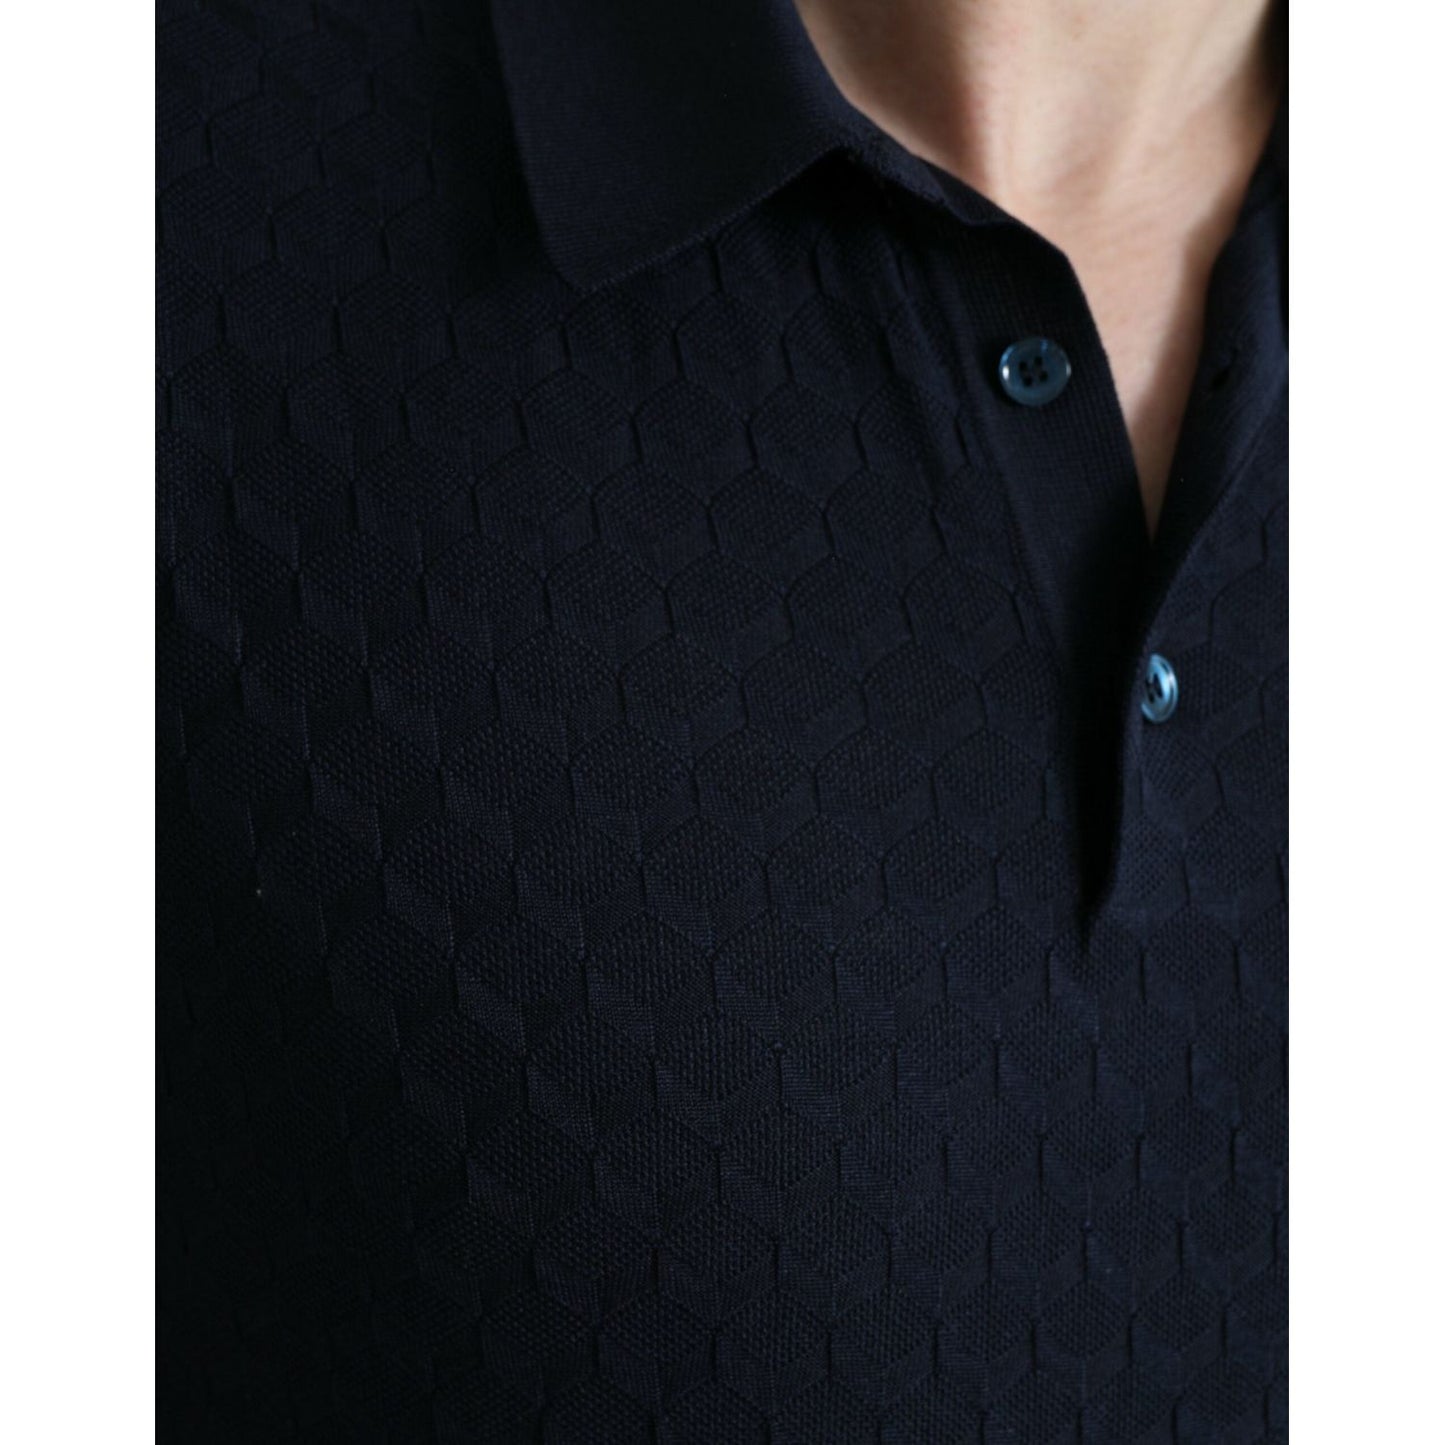 Dolce & Gabbana Dark Blue Collared Short Sleeve Polo T-shirt dark-blue-collared-short-sleeve-polo-t-shirt-1